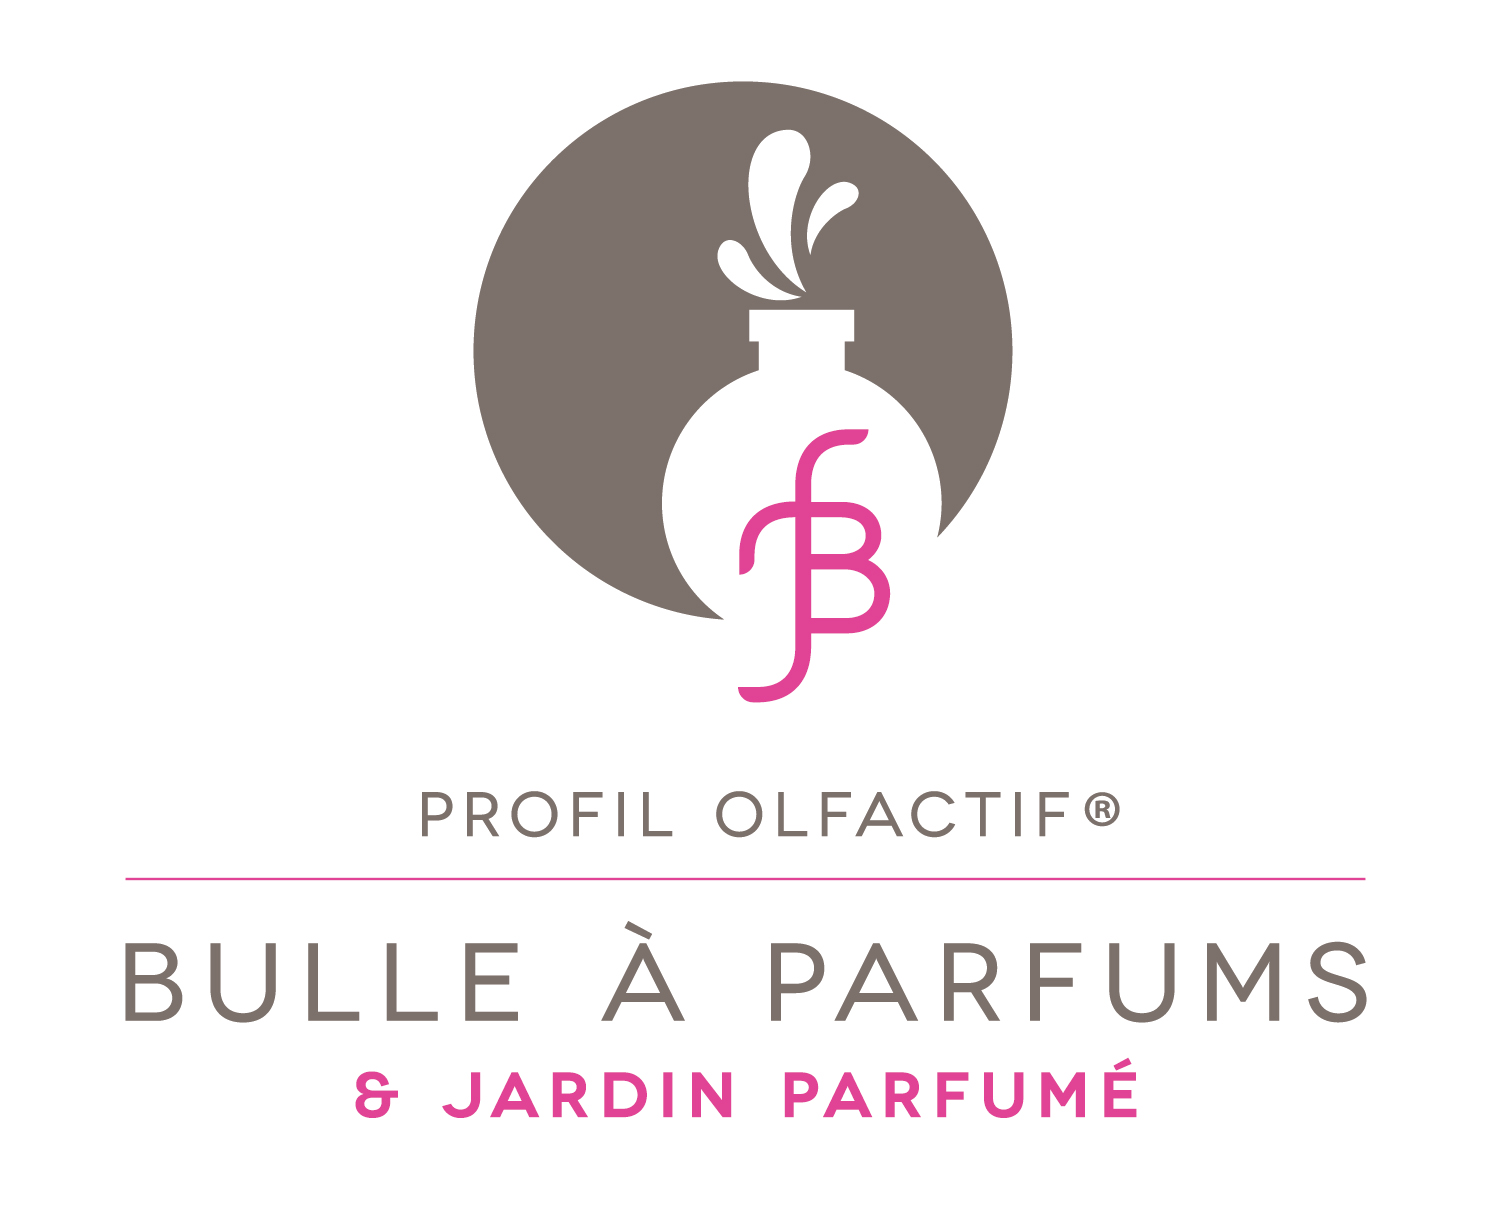 Profil olfactif Bulle à parfums et jardin parfumé marque déposée à INPI